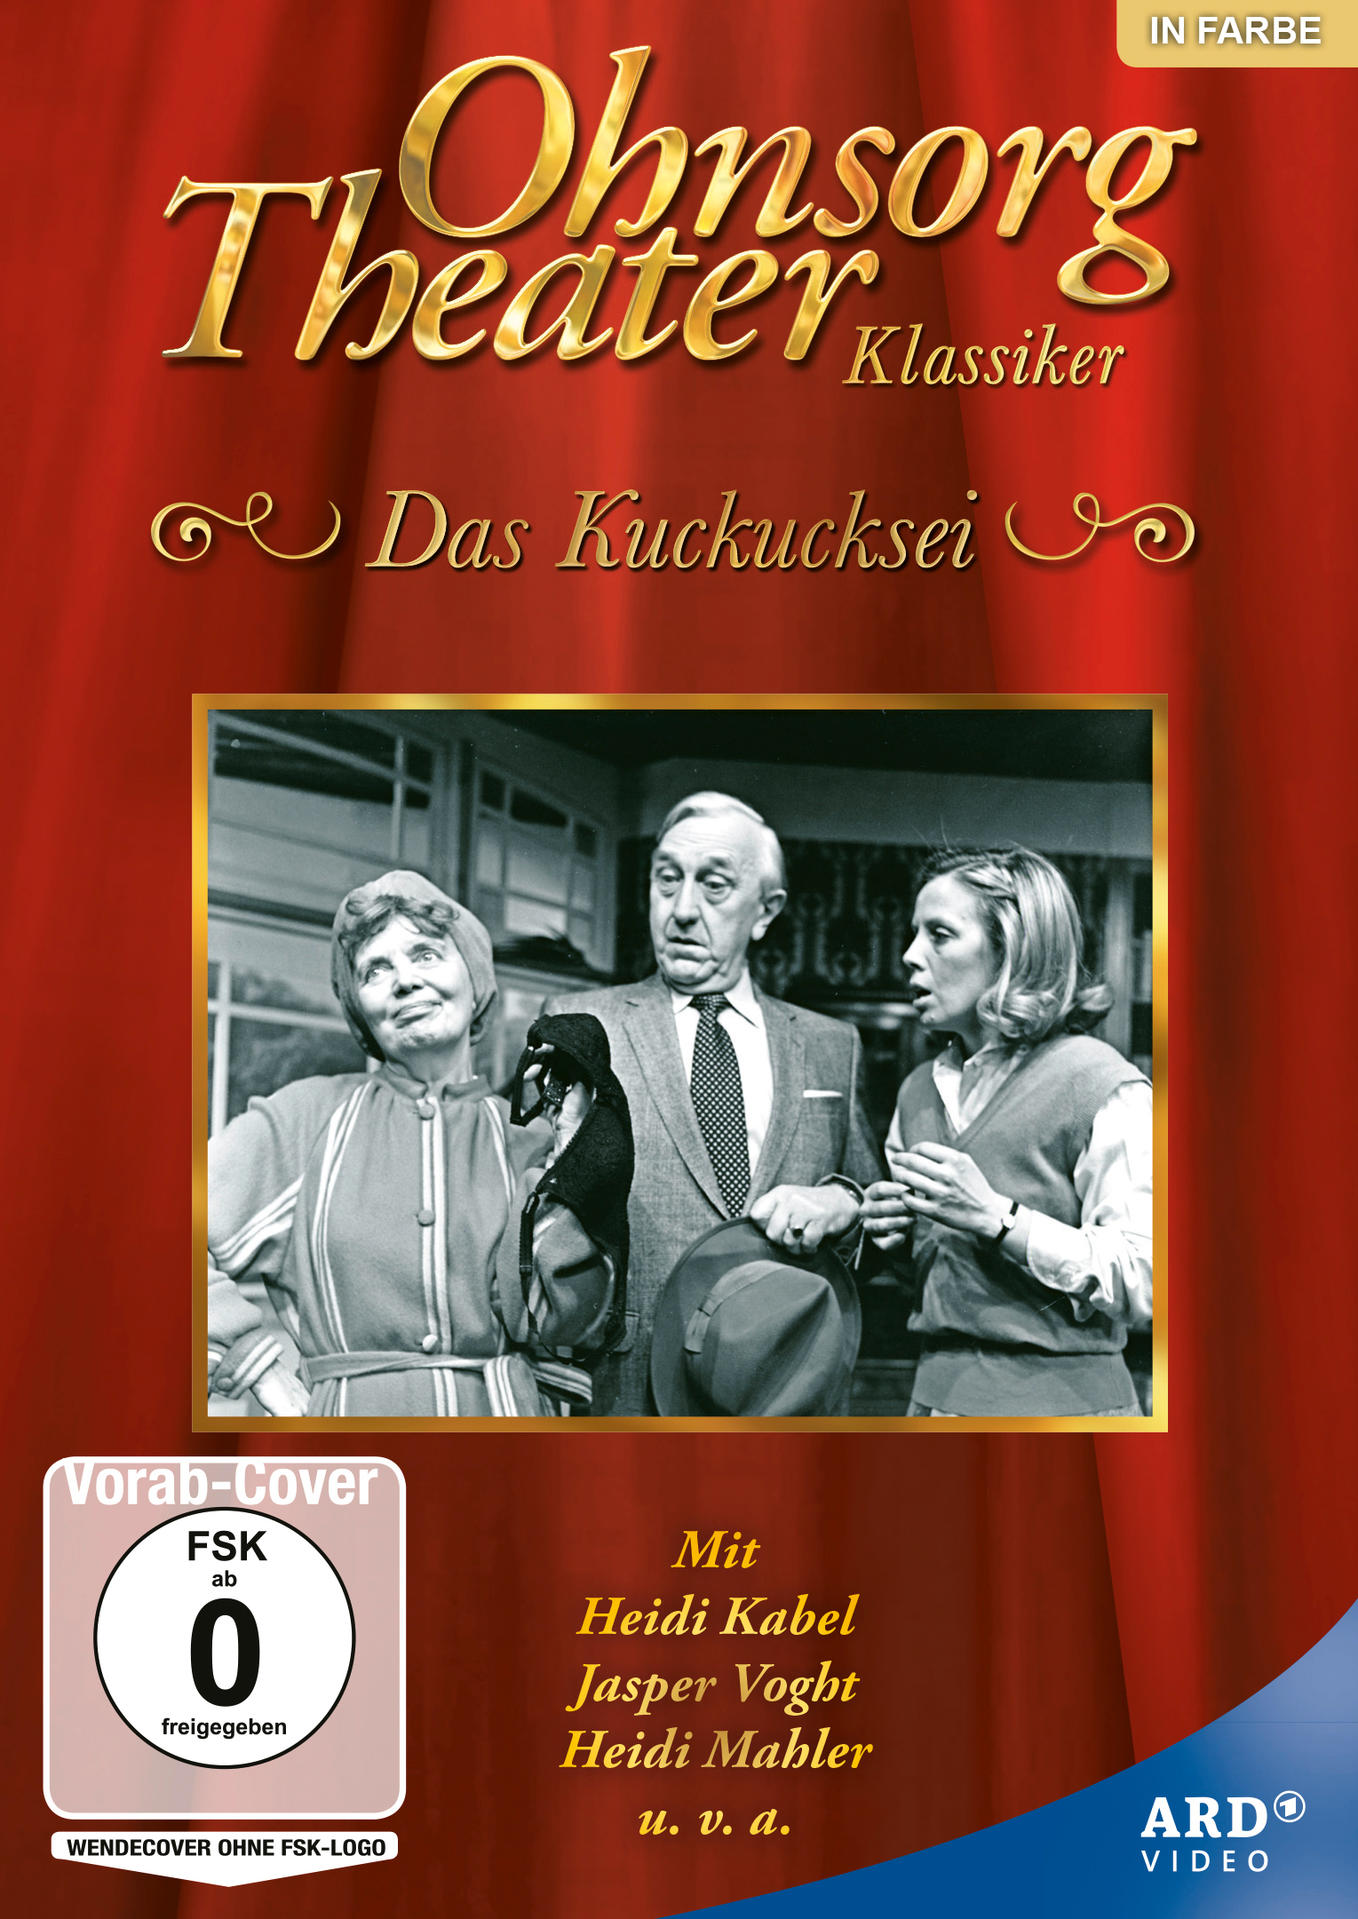 Ohnsorg-Theater Klassiker: Das DVD Kuckucksei